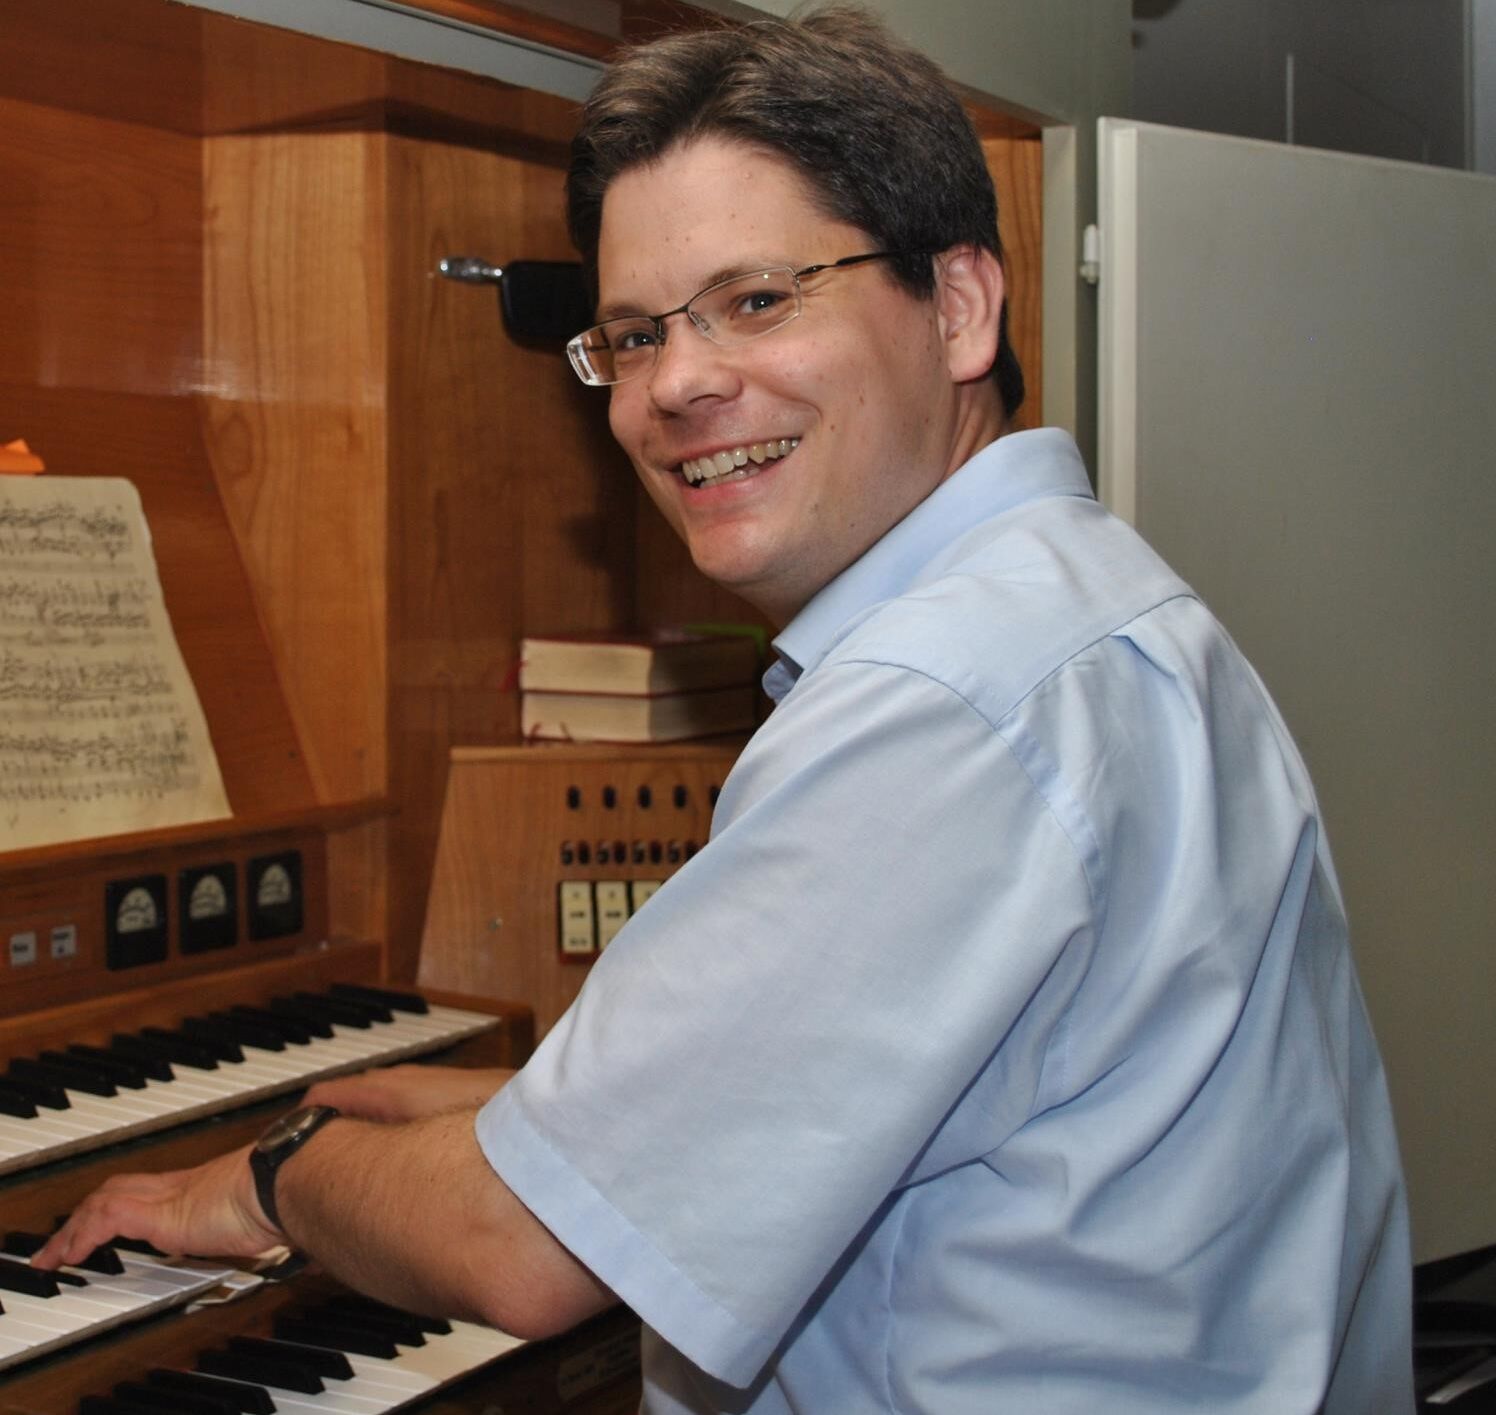 Kristian Schneider, Kantor und Organist an die St. Nikolai-Kirche in Elmshorn